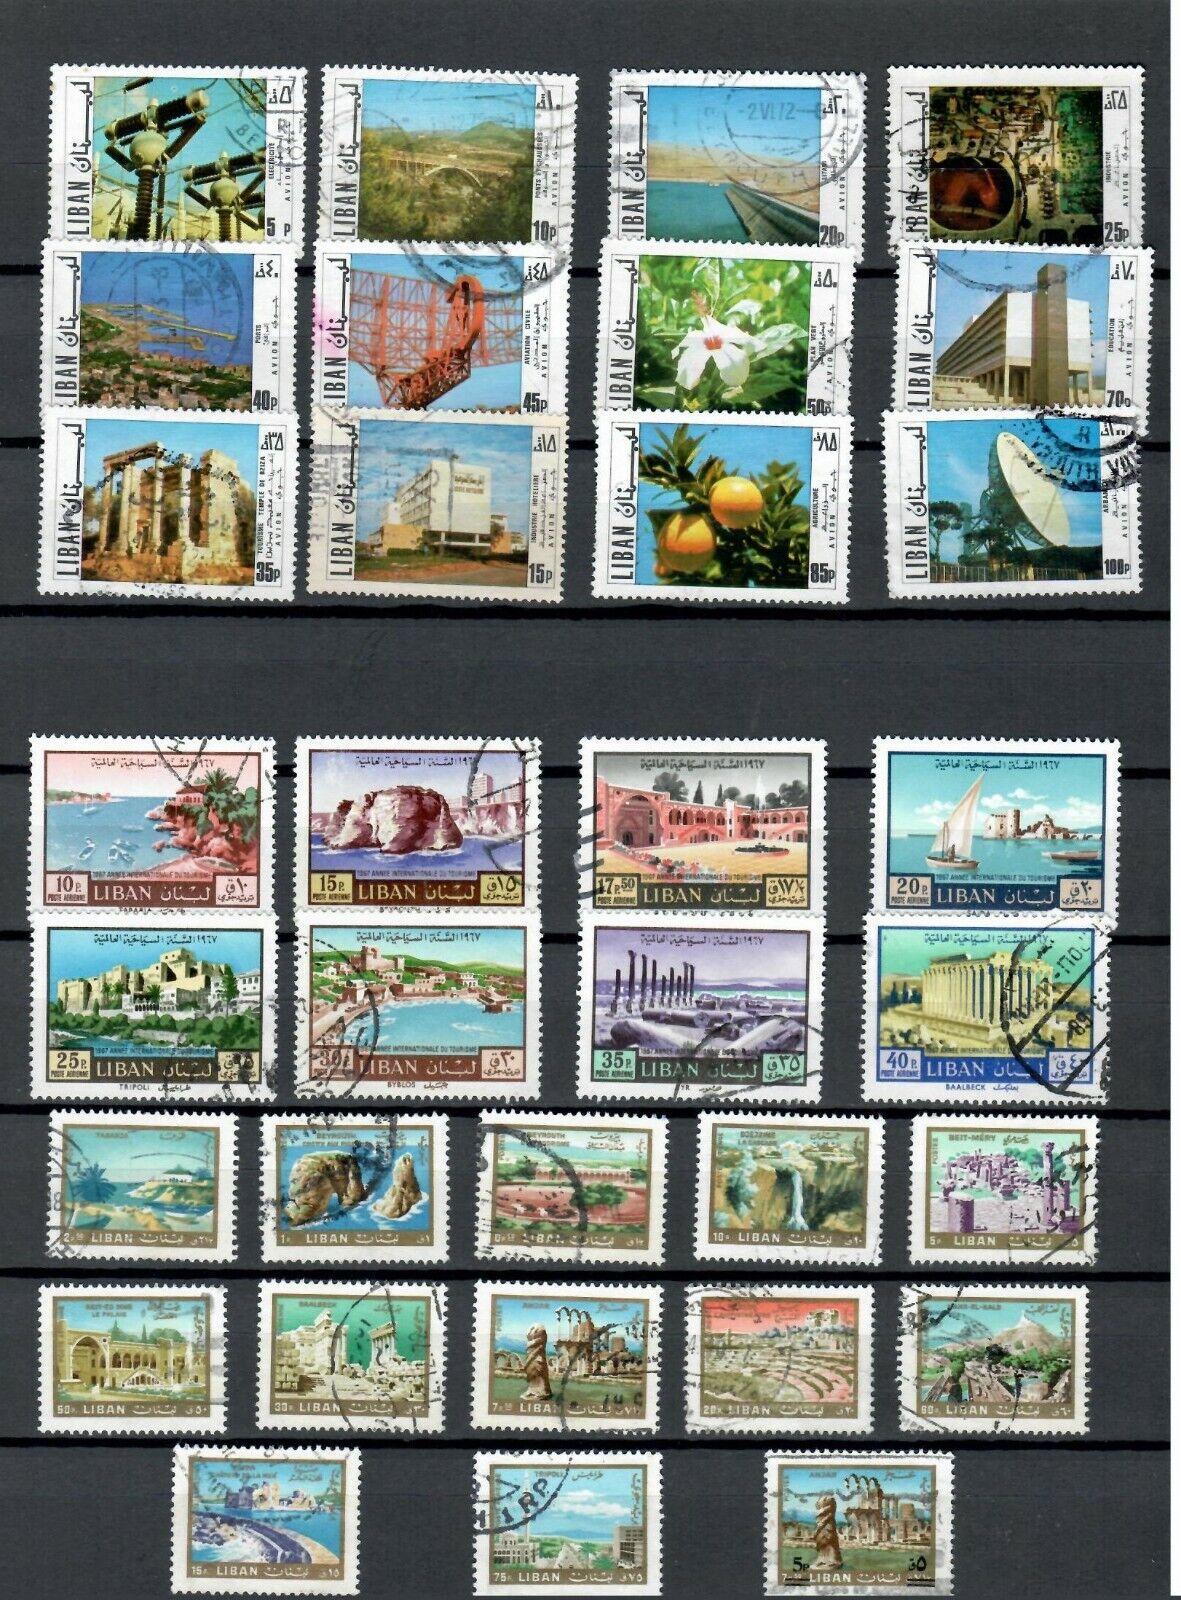 Lebanon Liban  Postal Used View 3 Set Of  Stamps Lot ( Leb 412)